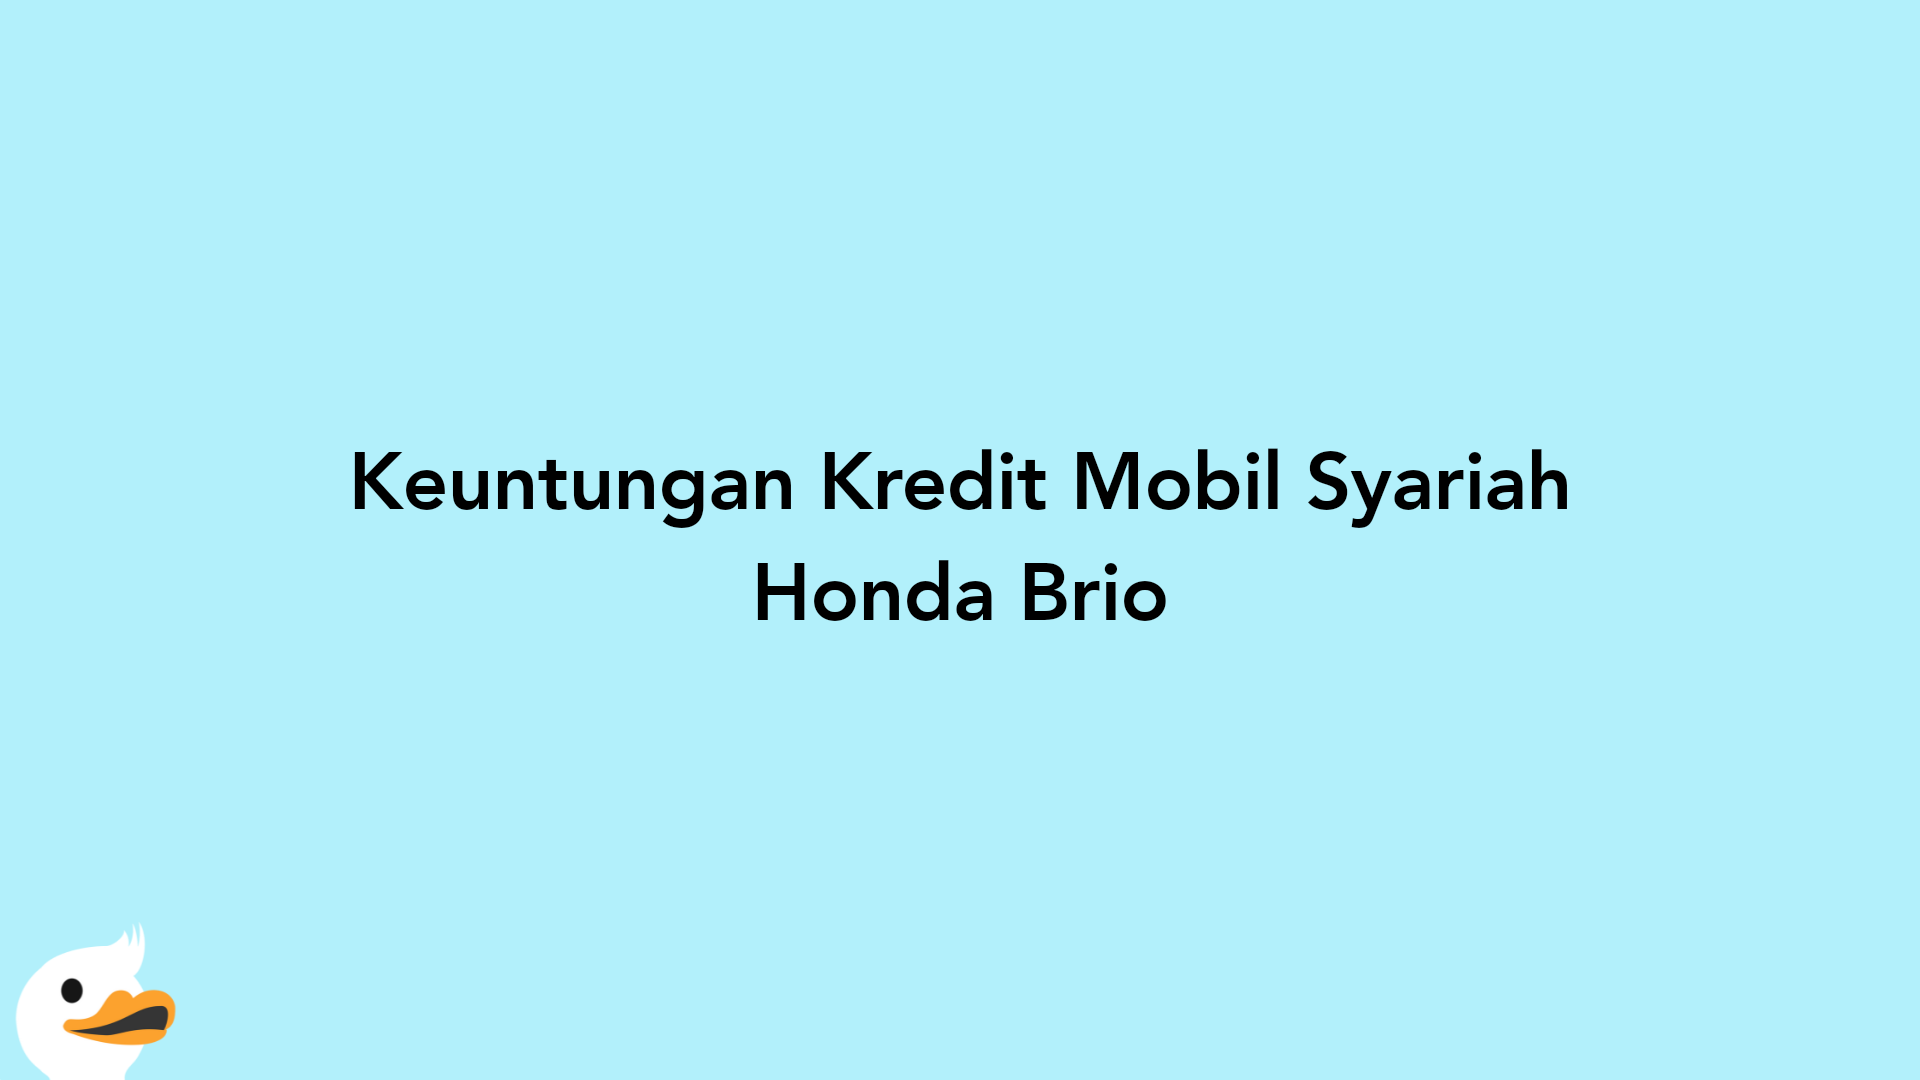 Keuntungan Kredit Mobil Syariah Honda Brio